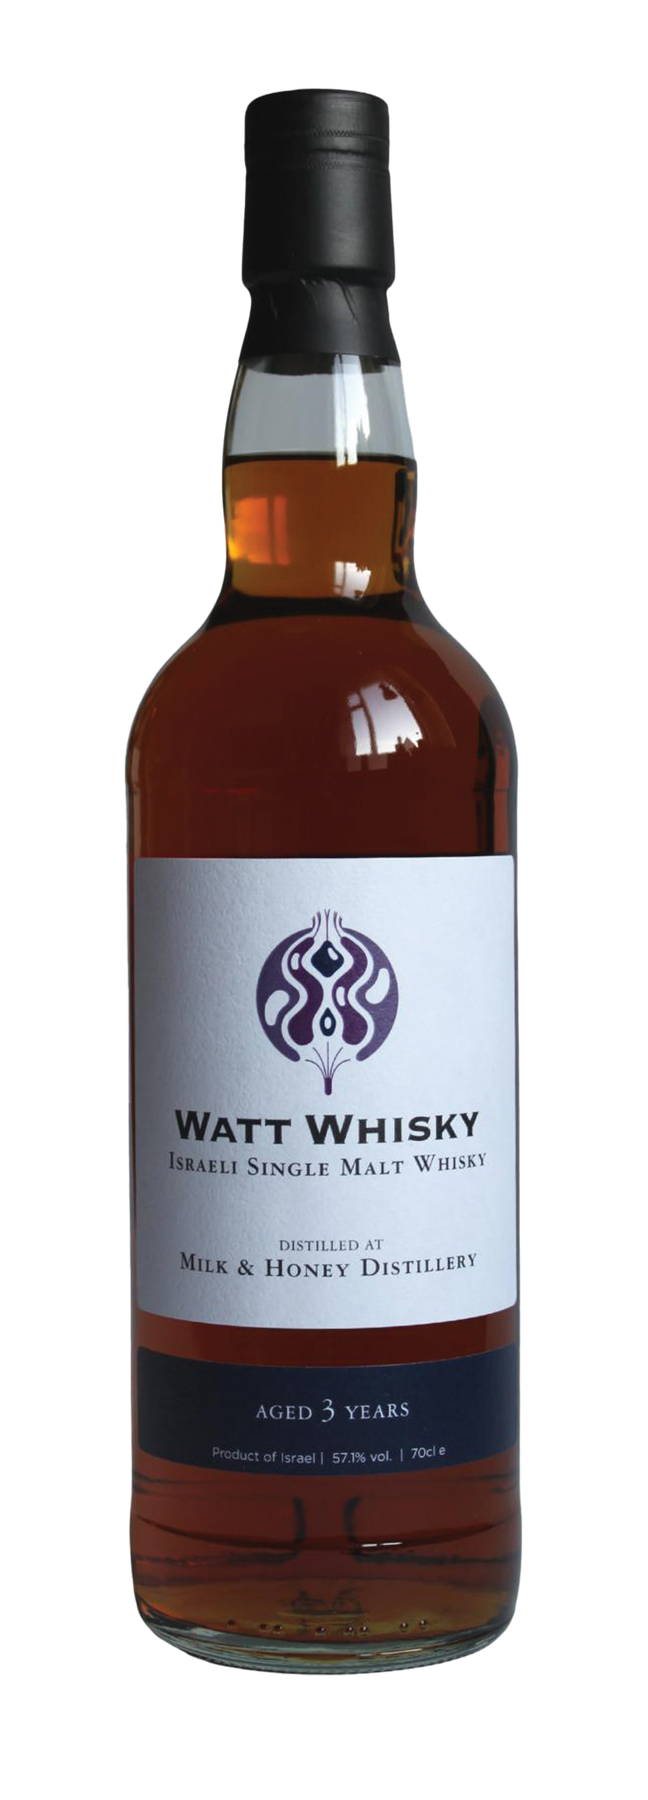 3 Years Old Watt Whisky 57,1% 2018 70cl